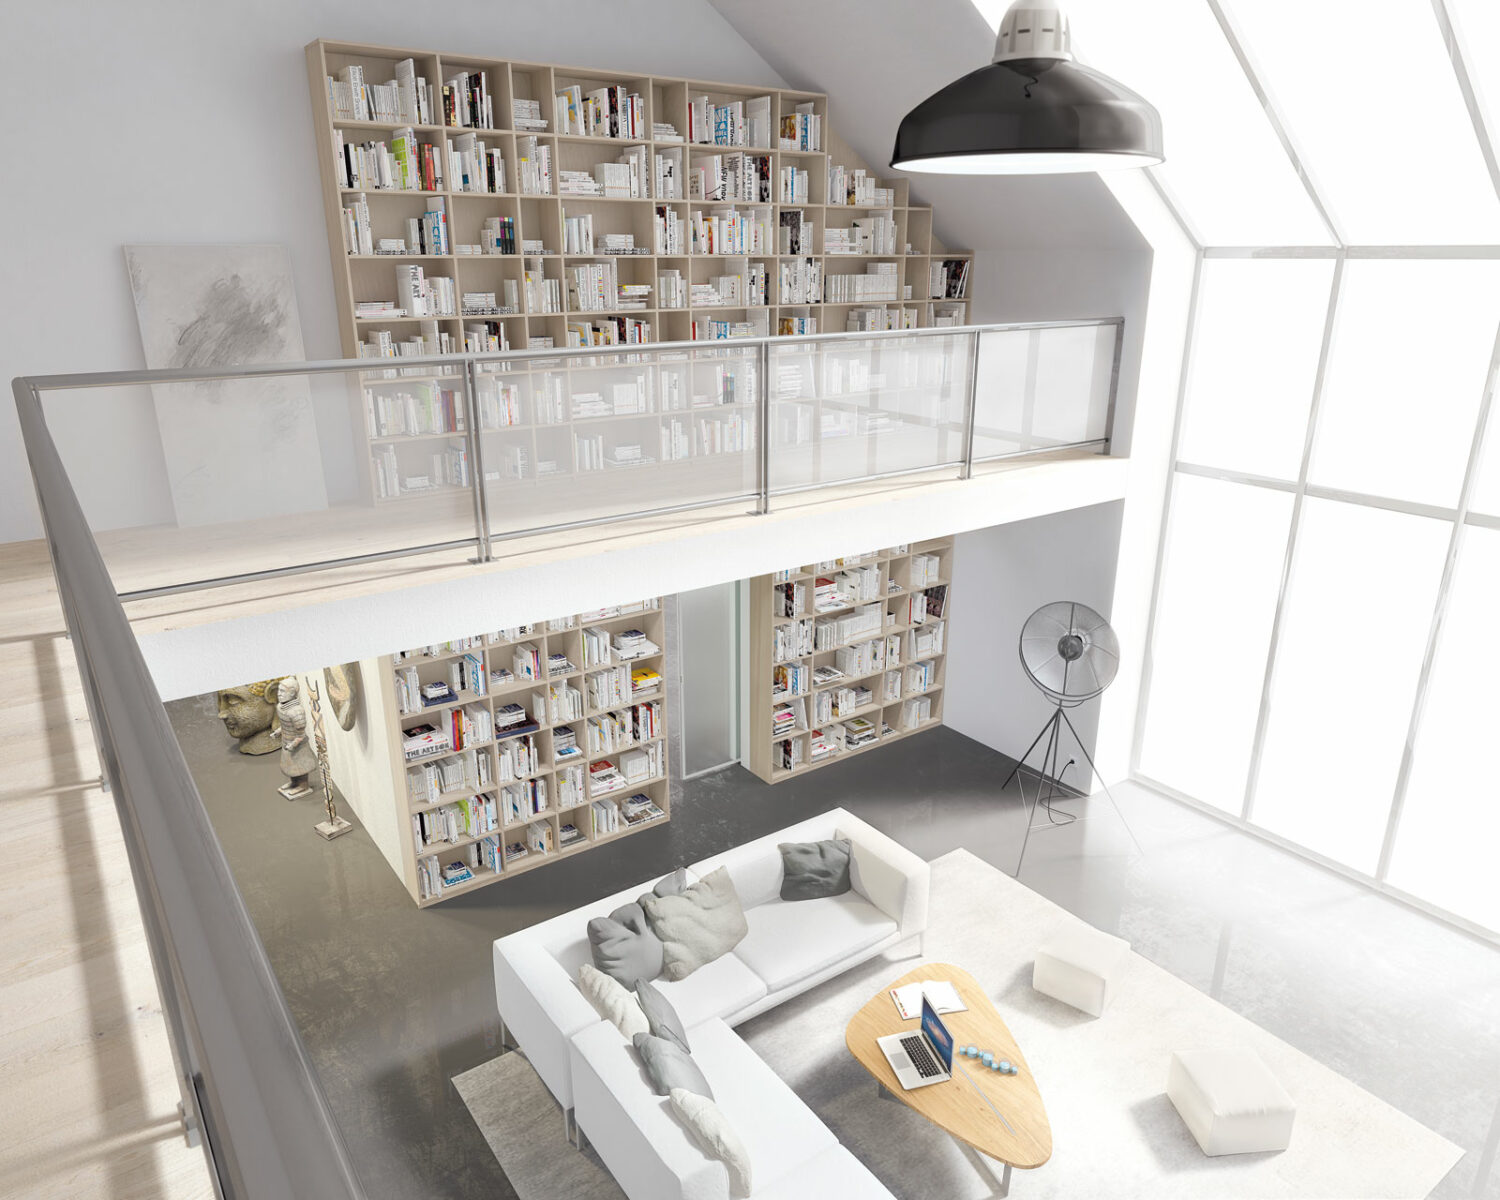 Salon loft moderne avec de hauts plafonds et une vaste étagère, baigné de lumière naturelle grâce à de grandes fenêtres, doté d'un coin salon confortable conçu pour la détente et la lecture pour les particuliers.